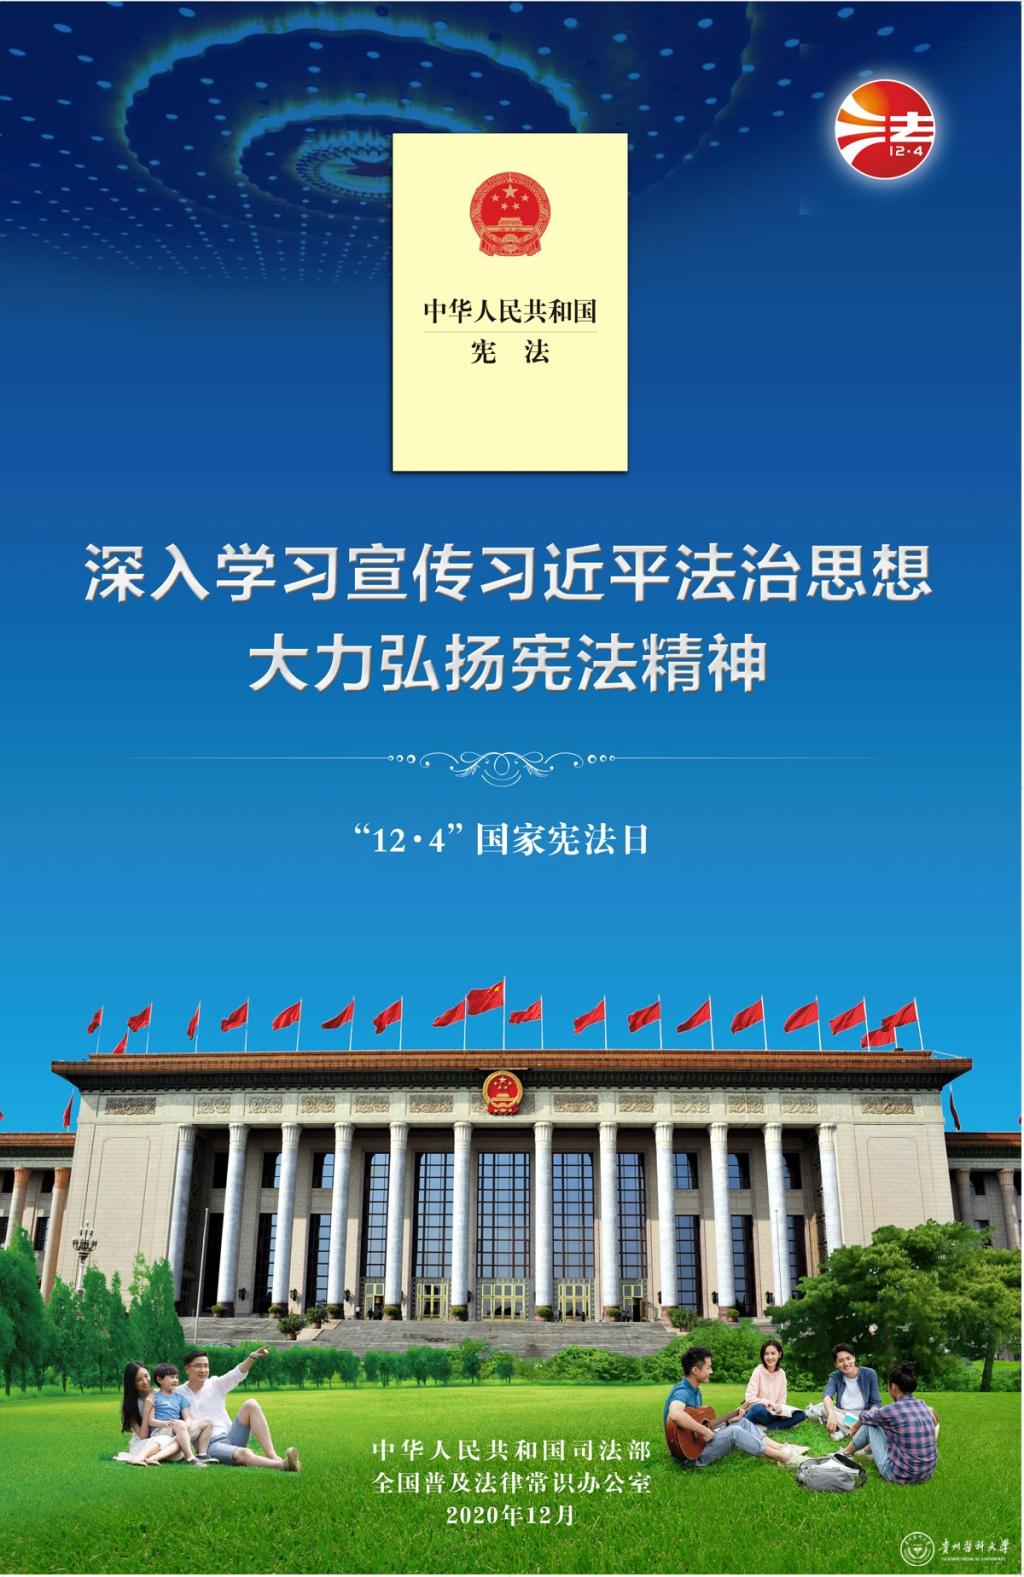 弘扬宪法制精神建设法治中国展板图片下载 - 觅知网